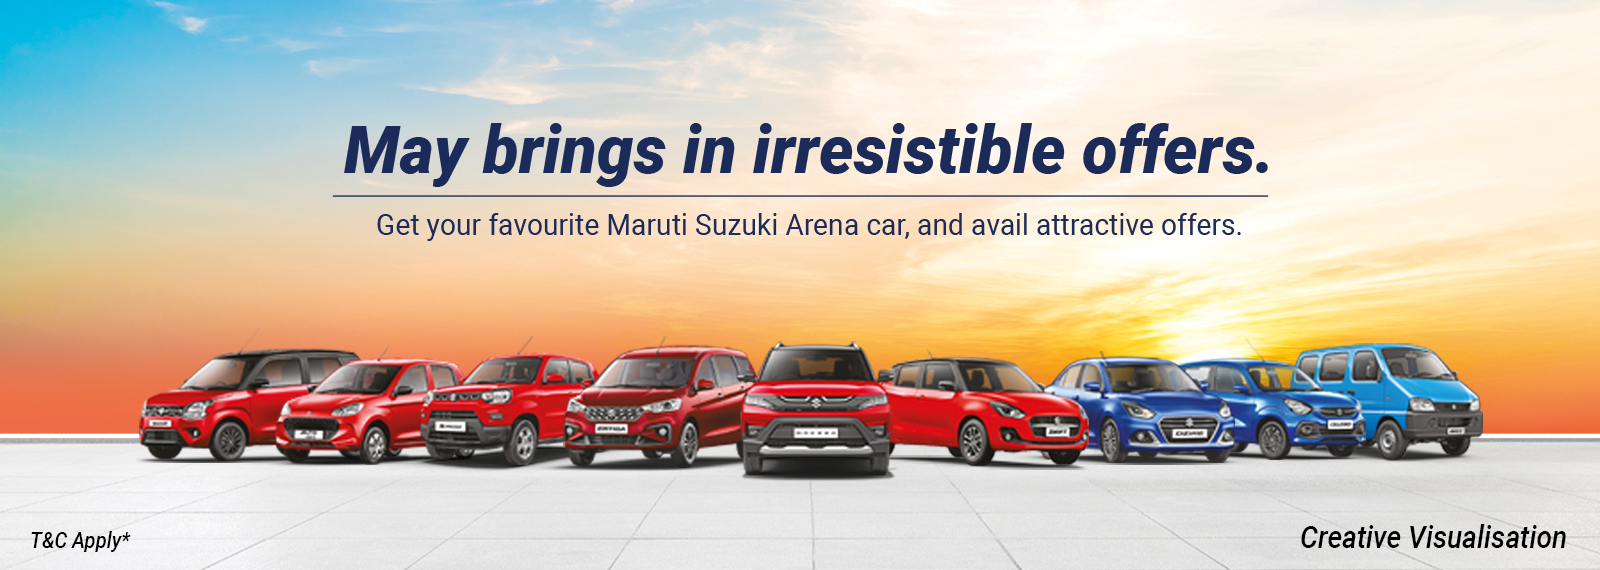 Auric Motors Maruti Suzuki ARENA, New Pali Road